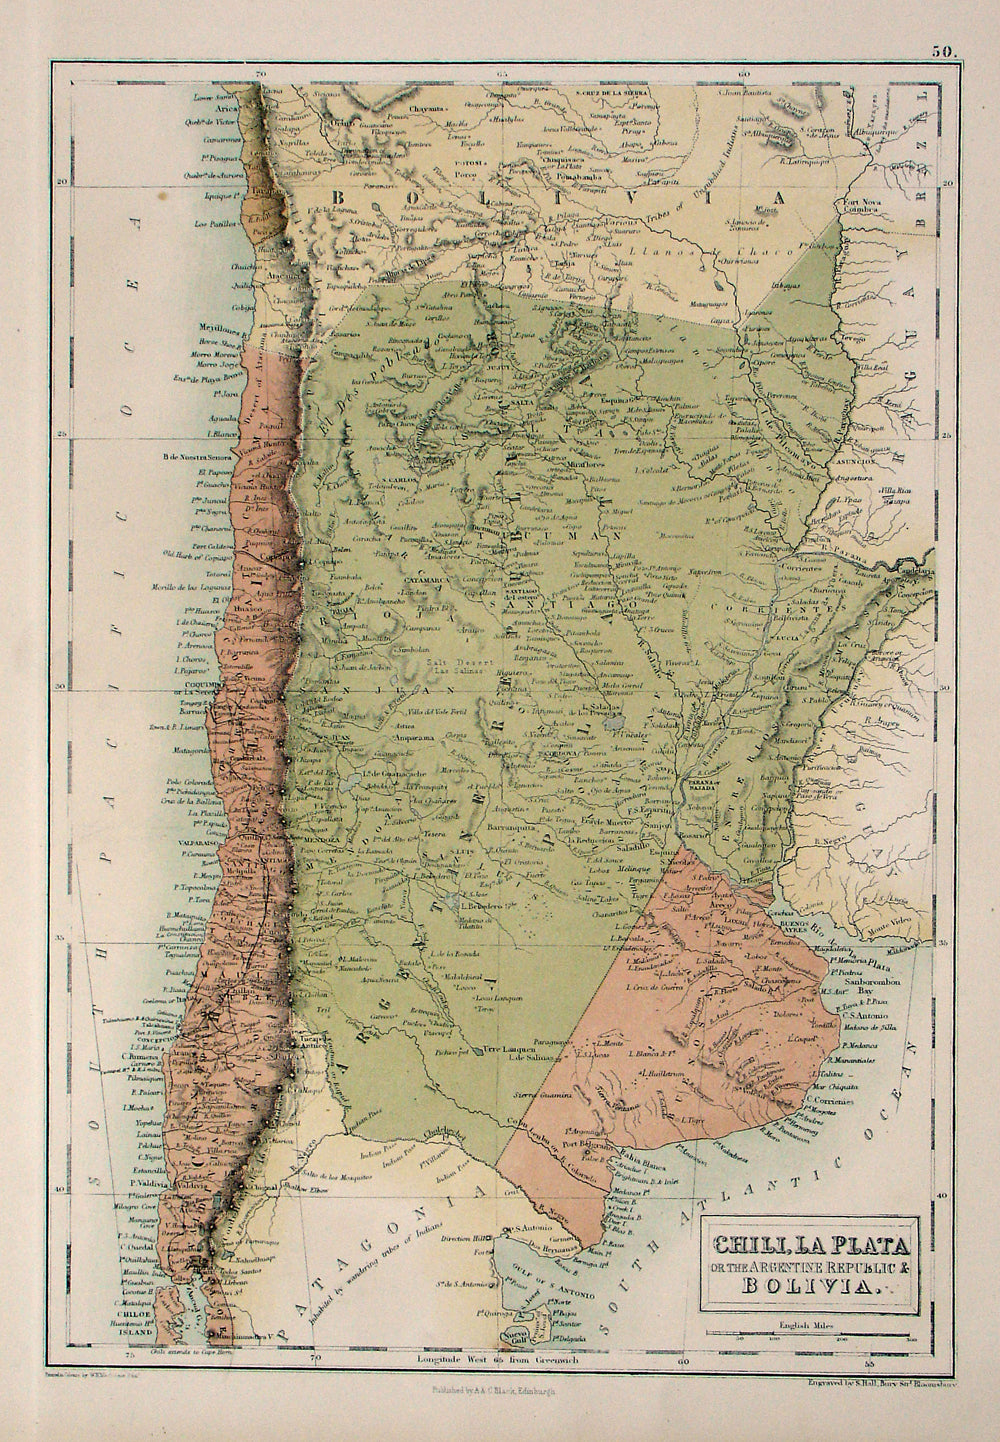 Chili, La Plata or the Argentine Republic & Bolivia